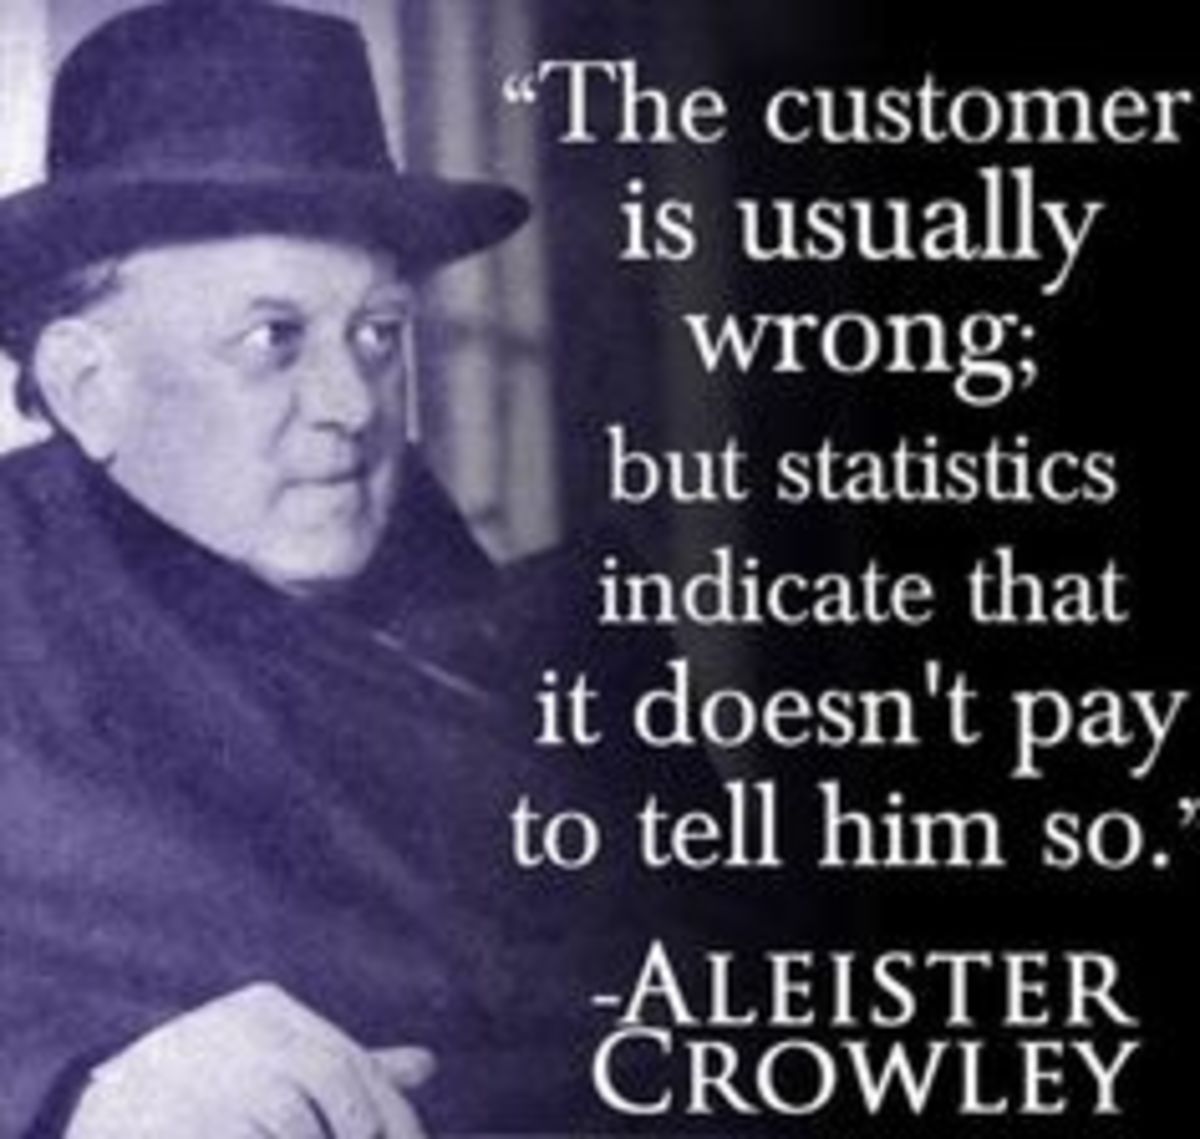 rude-customer-service